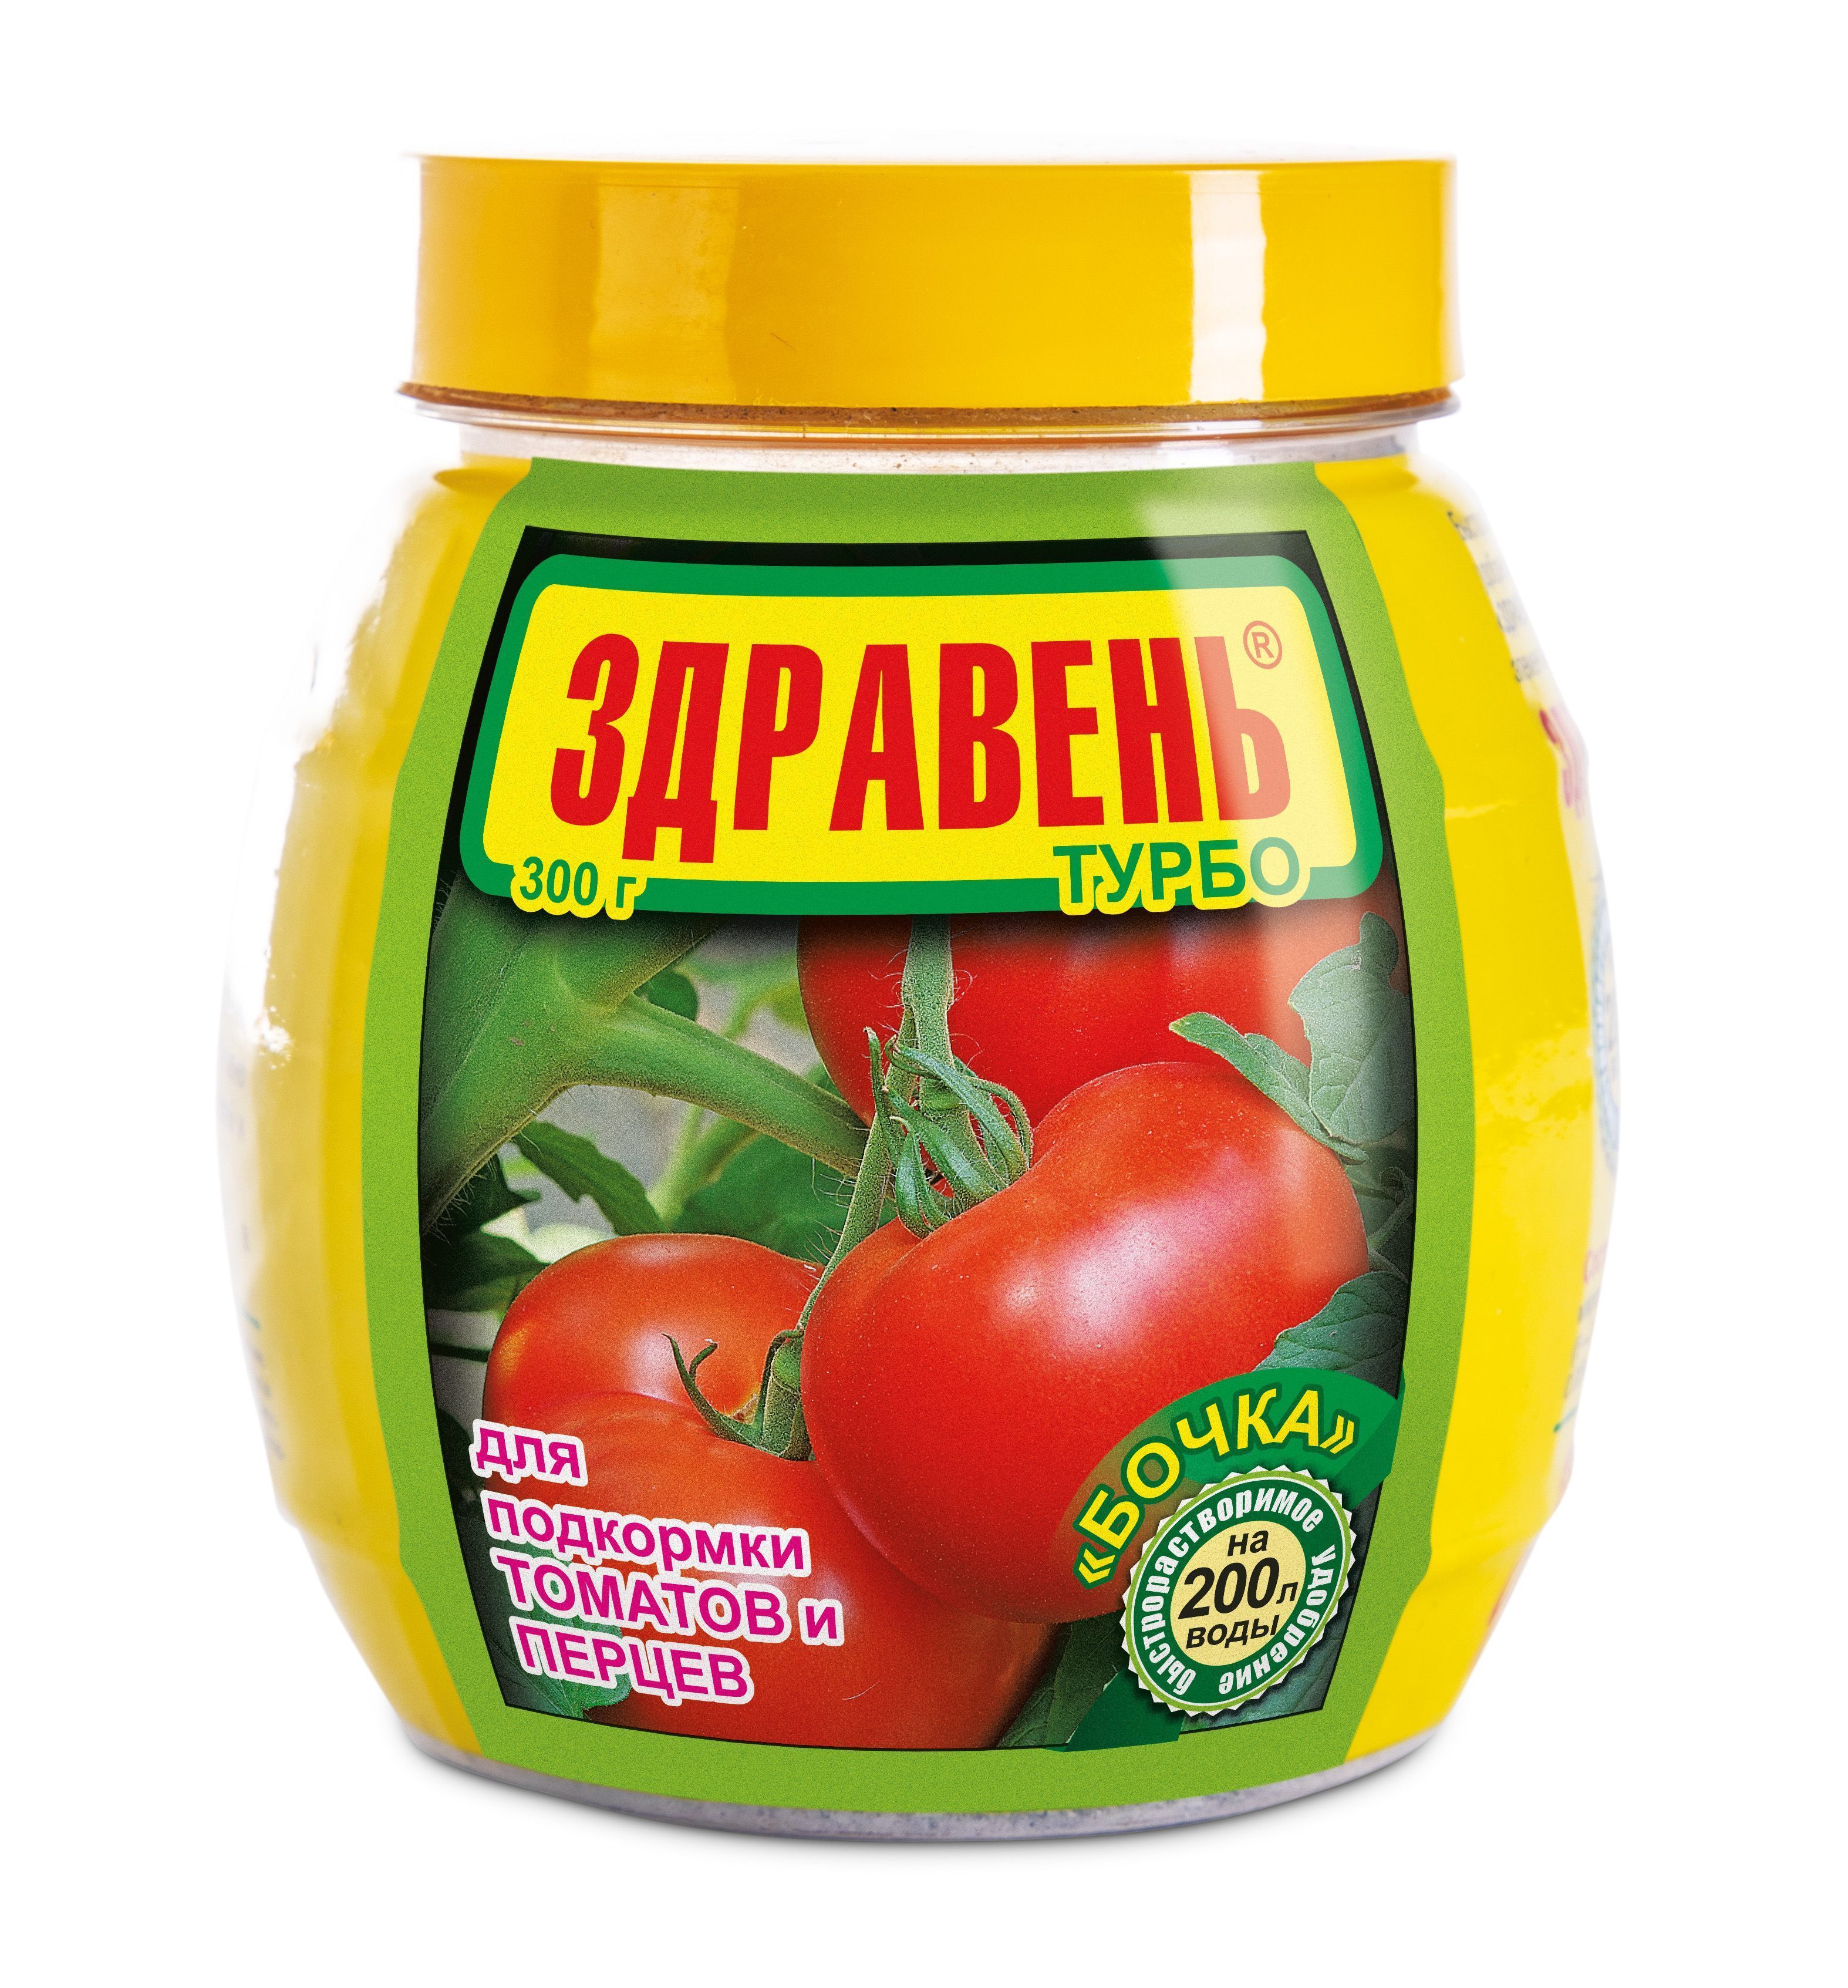 Здравень Турбо для подкормки томатов и перцев» - где купить, инструкция поприменению